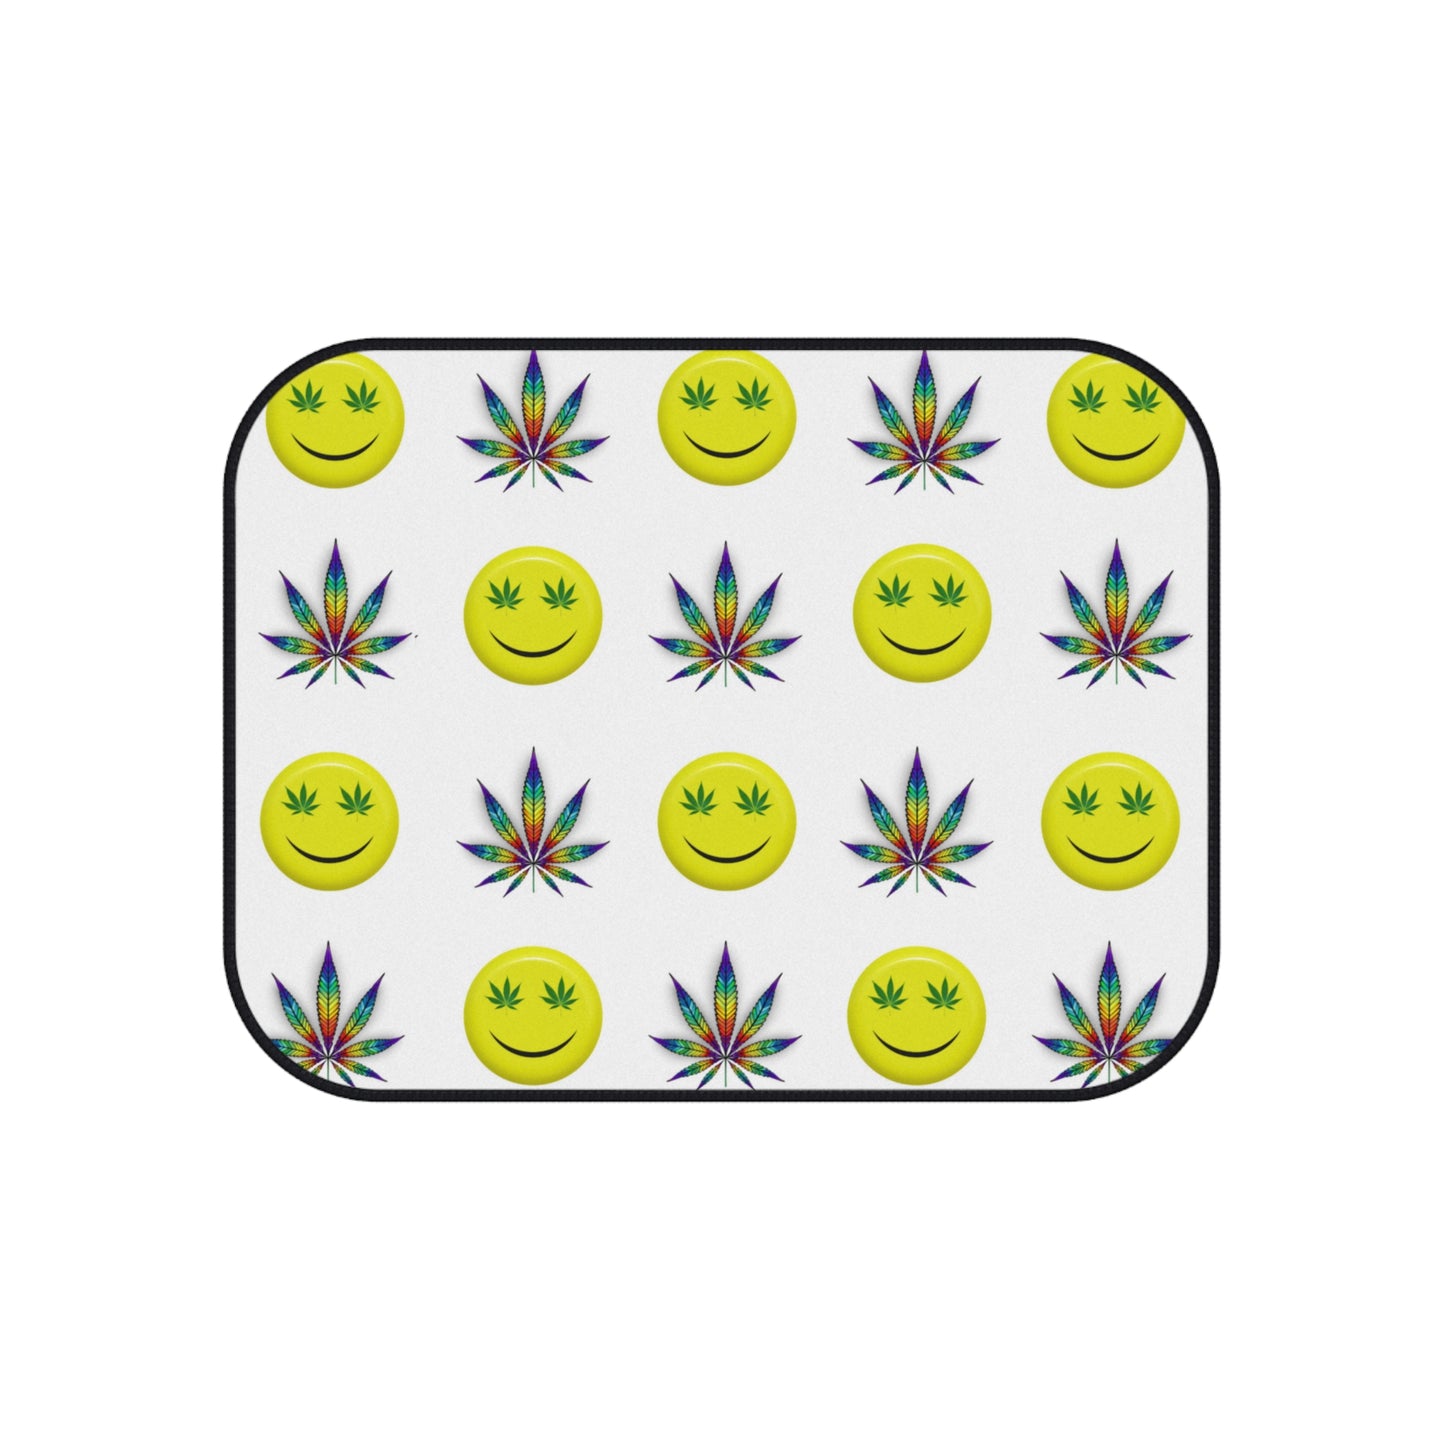 Faccina Cannabis Car Mats (Set of 4)